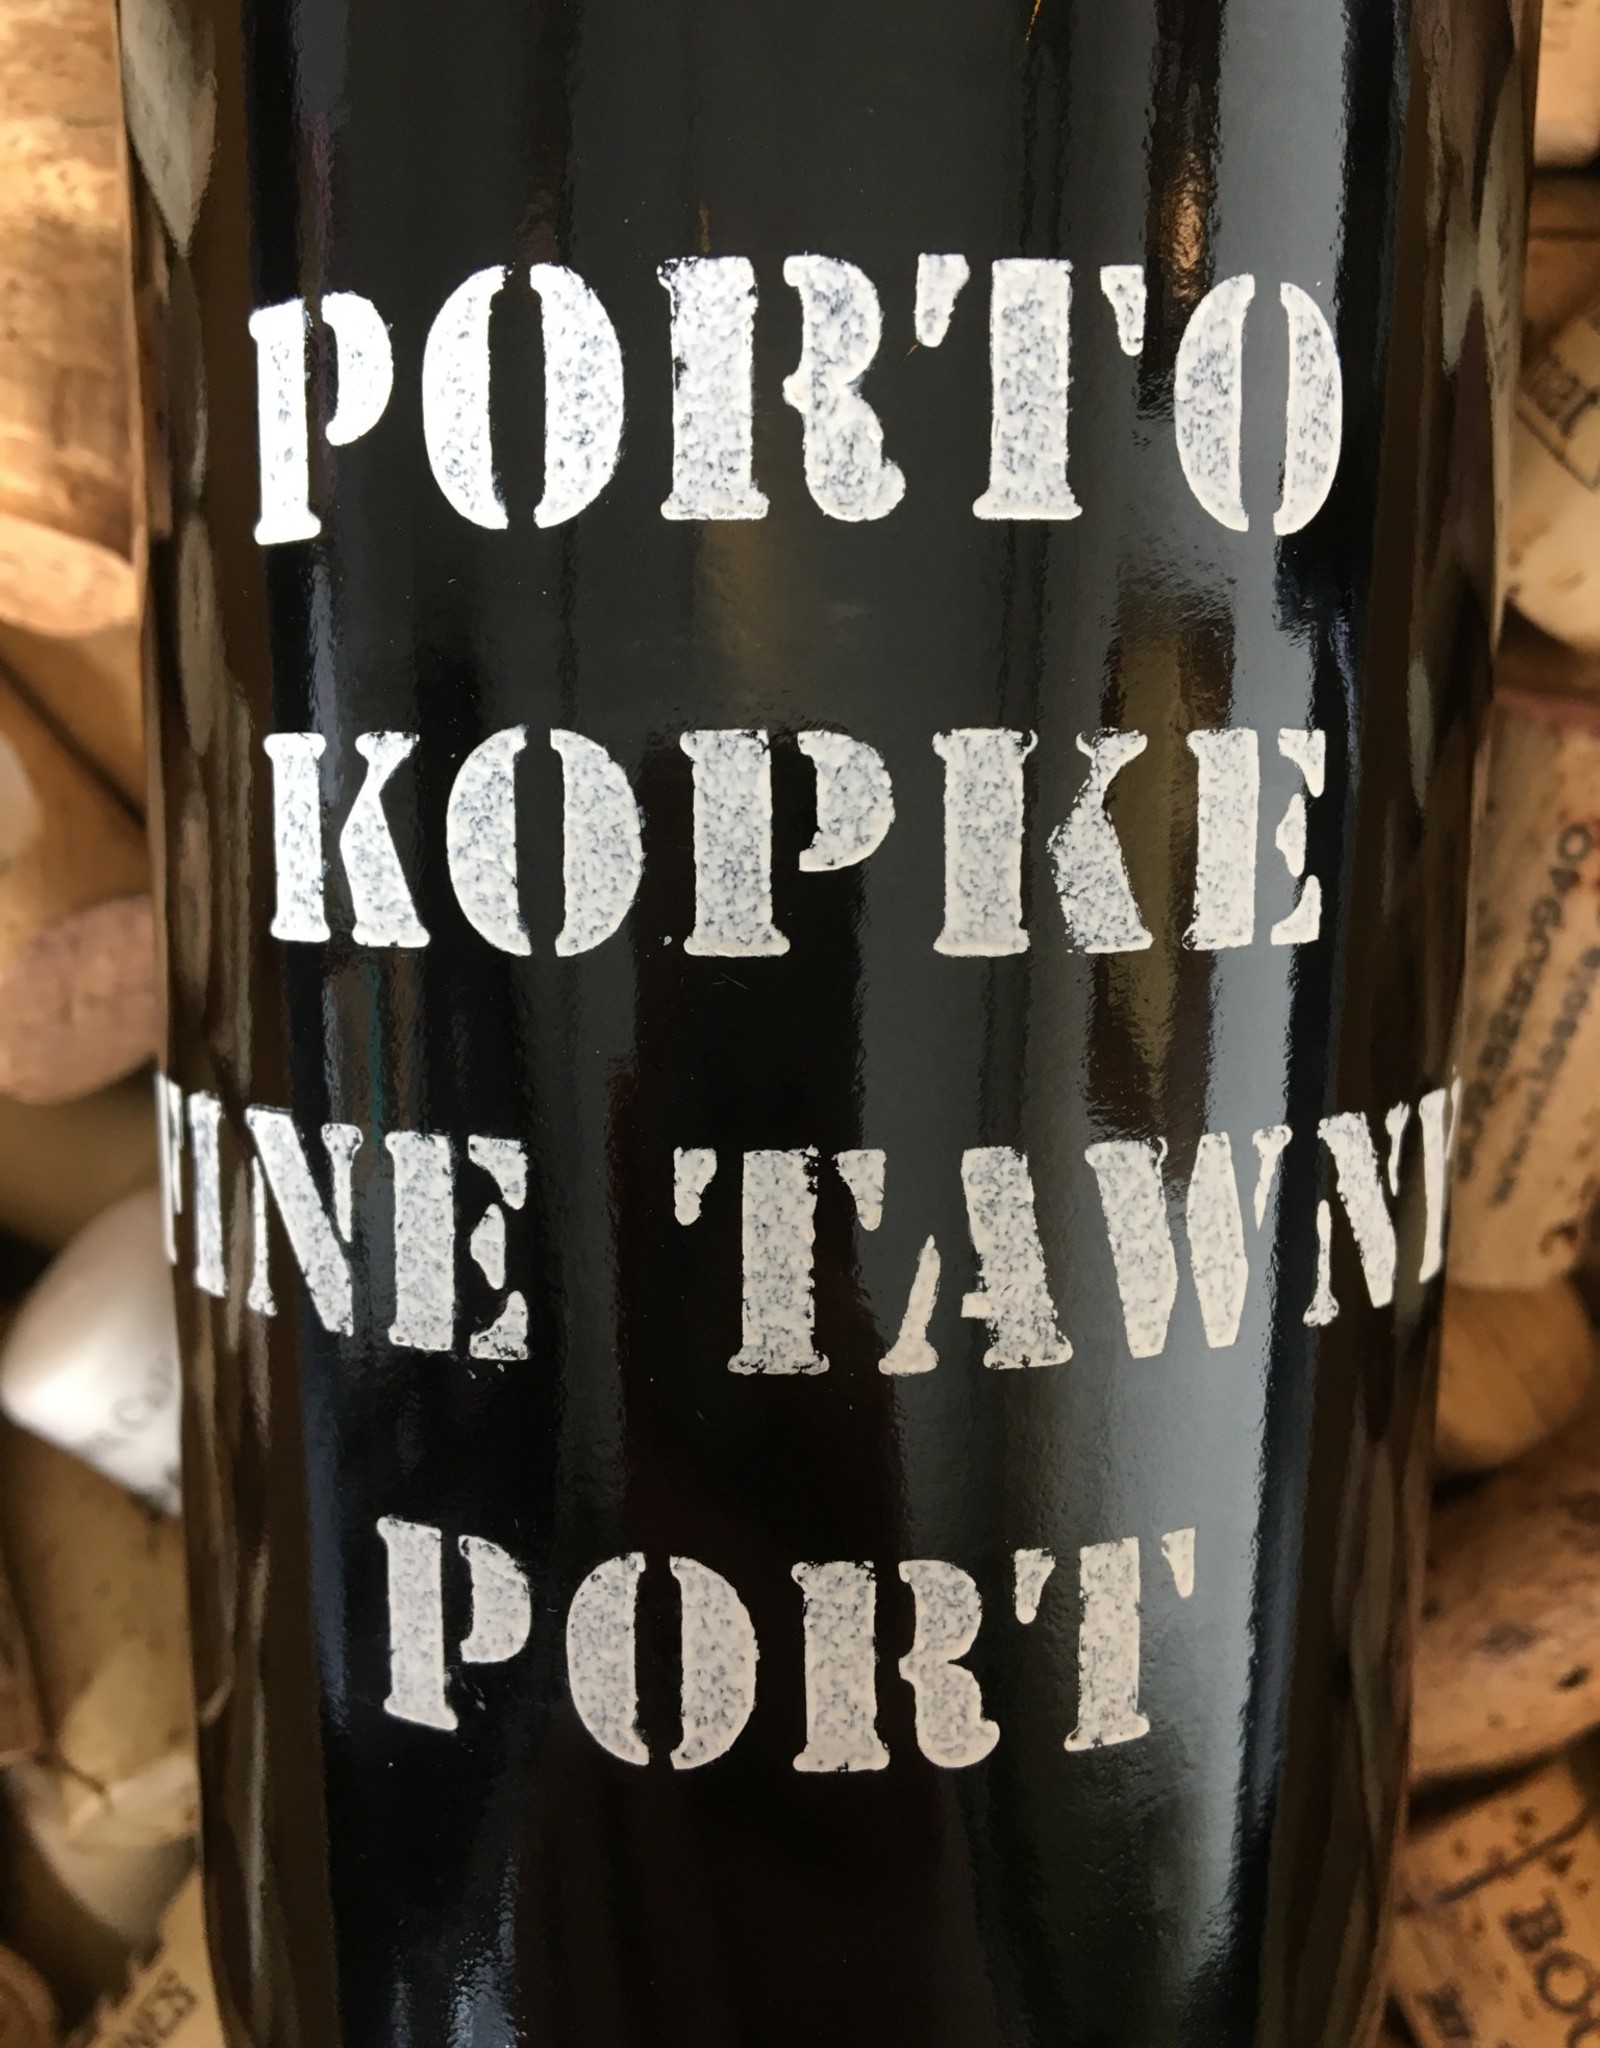 Kopke Kopke "Fine Tawny" Port Portugal